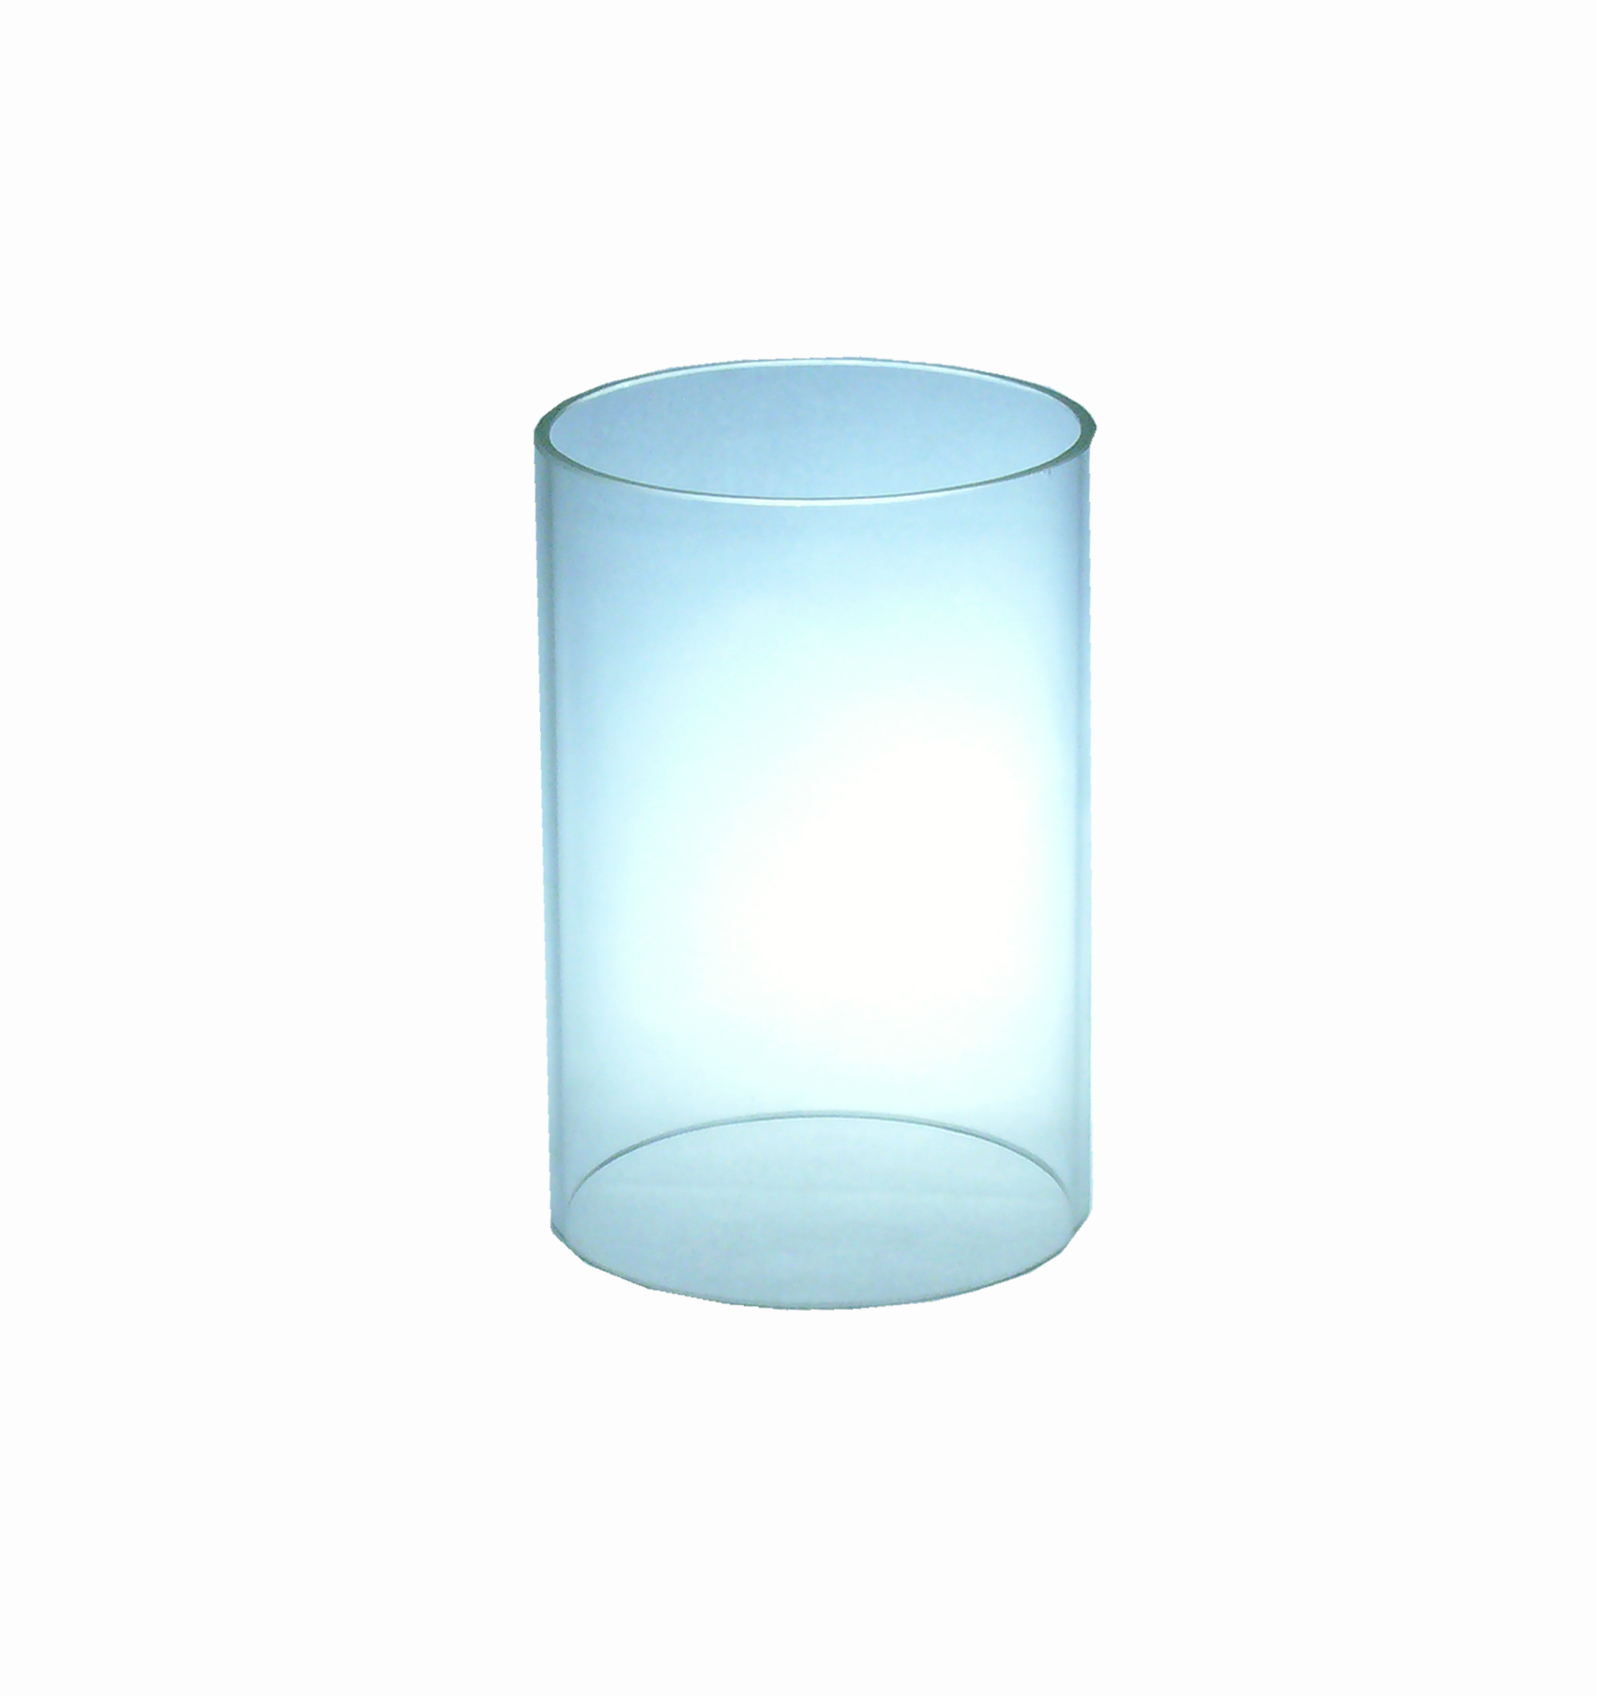 Grablampenersatzglas 9 cm h, 7 cm Ø außen, innen 6,7 cm